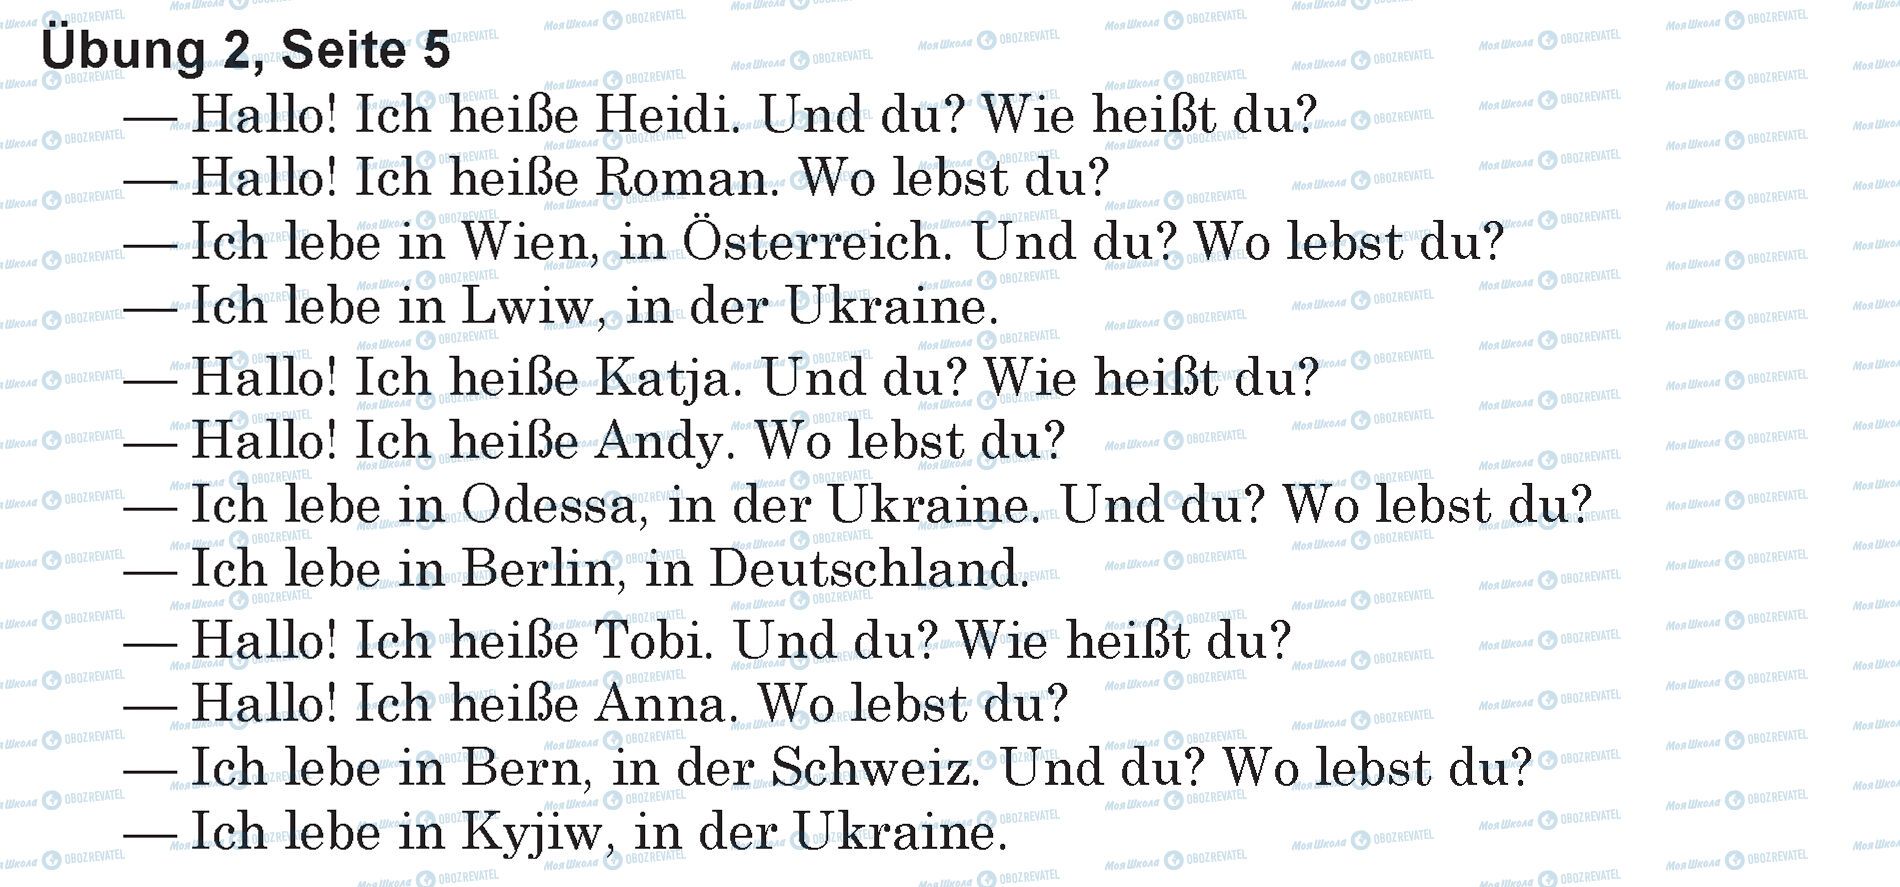 ГДЗ Німецька мова 5 клас сторінка Ubung 2, Seite 5